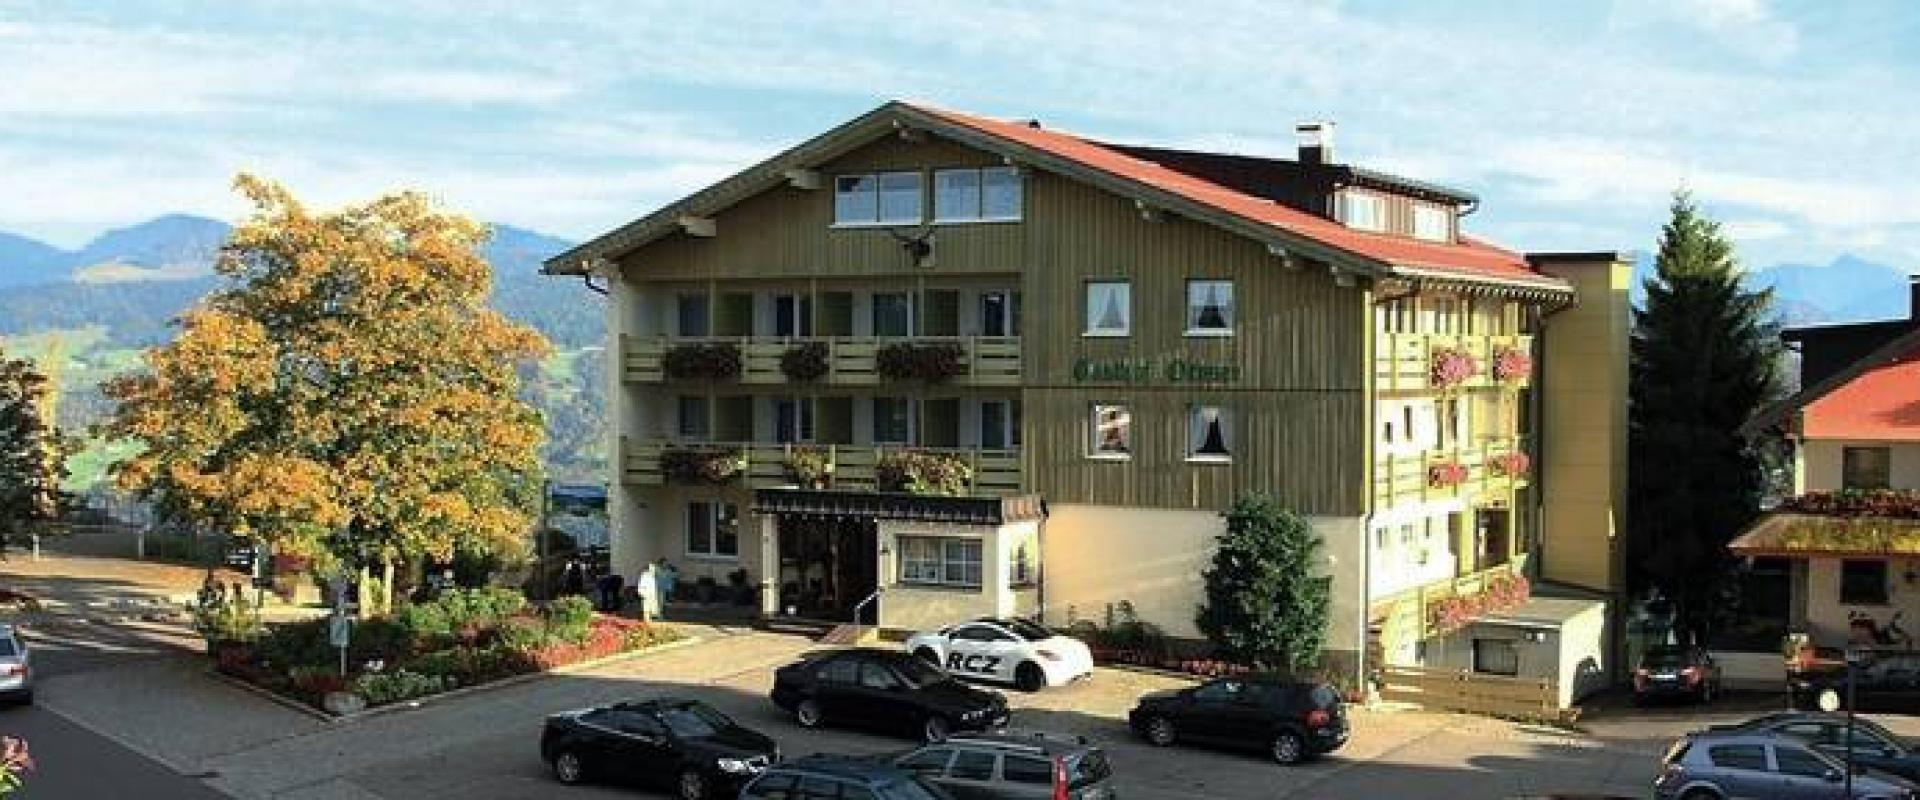 14467 Biker Hotel Ochsen in Vorarlberg.jpg